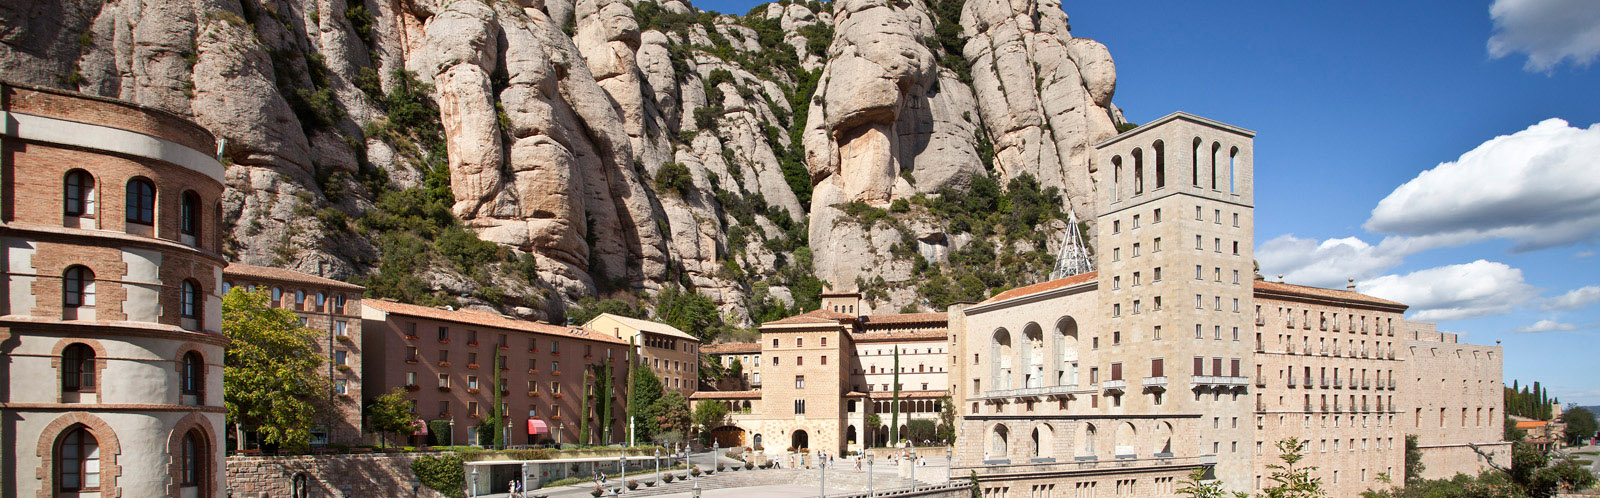 Vista panoràmica del Santuari de Montserrat / Vista panorámica del Santuario de Montserrat